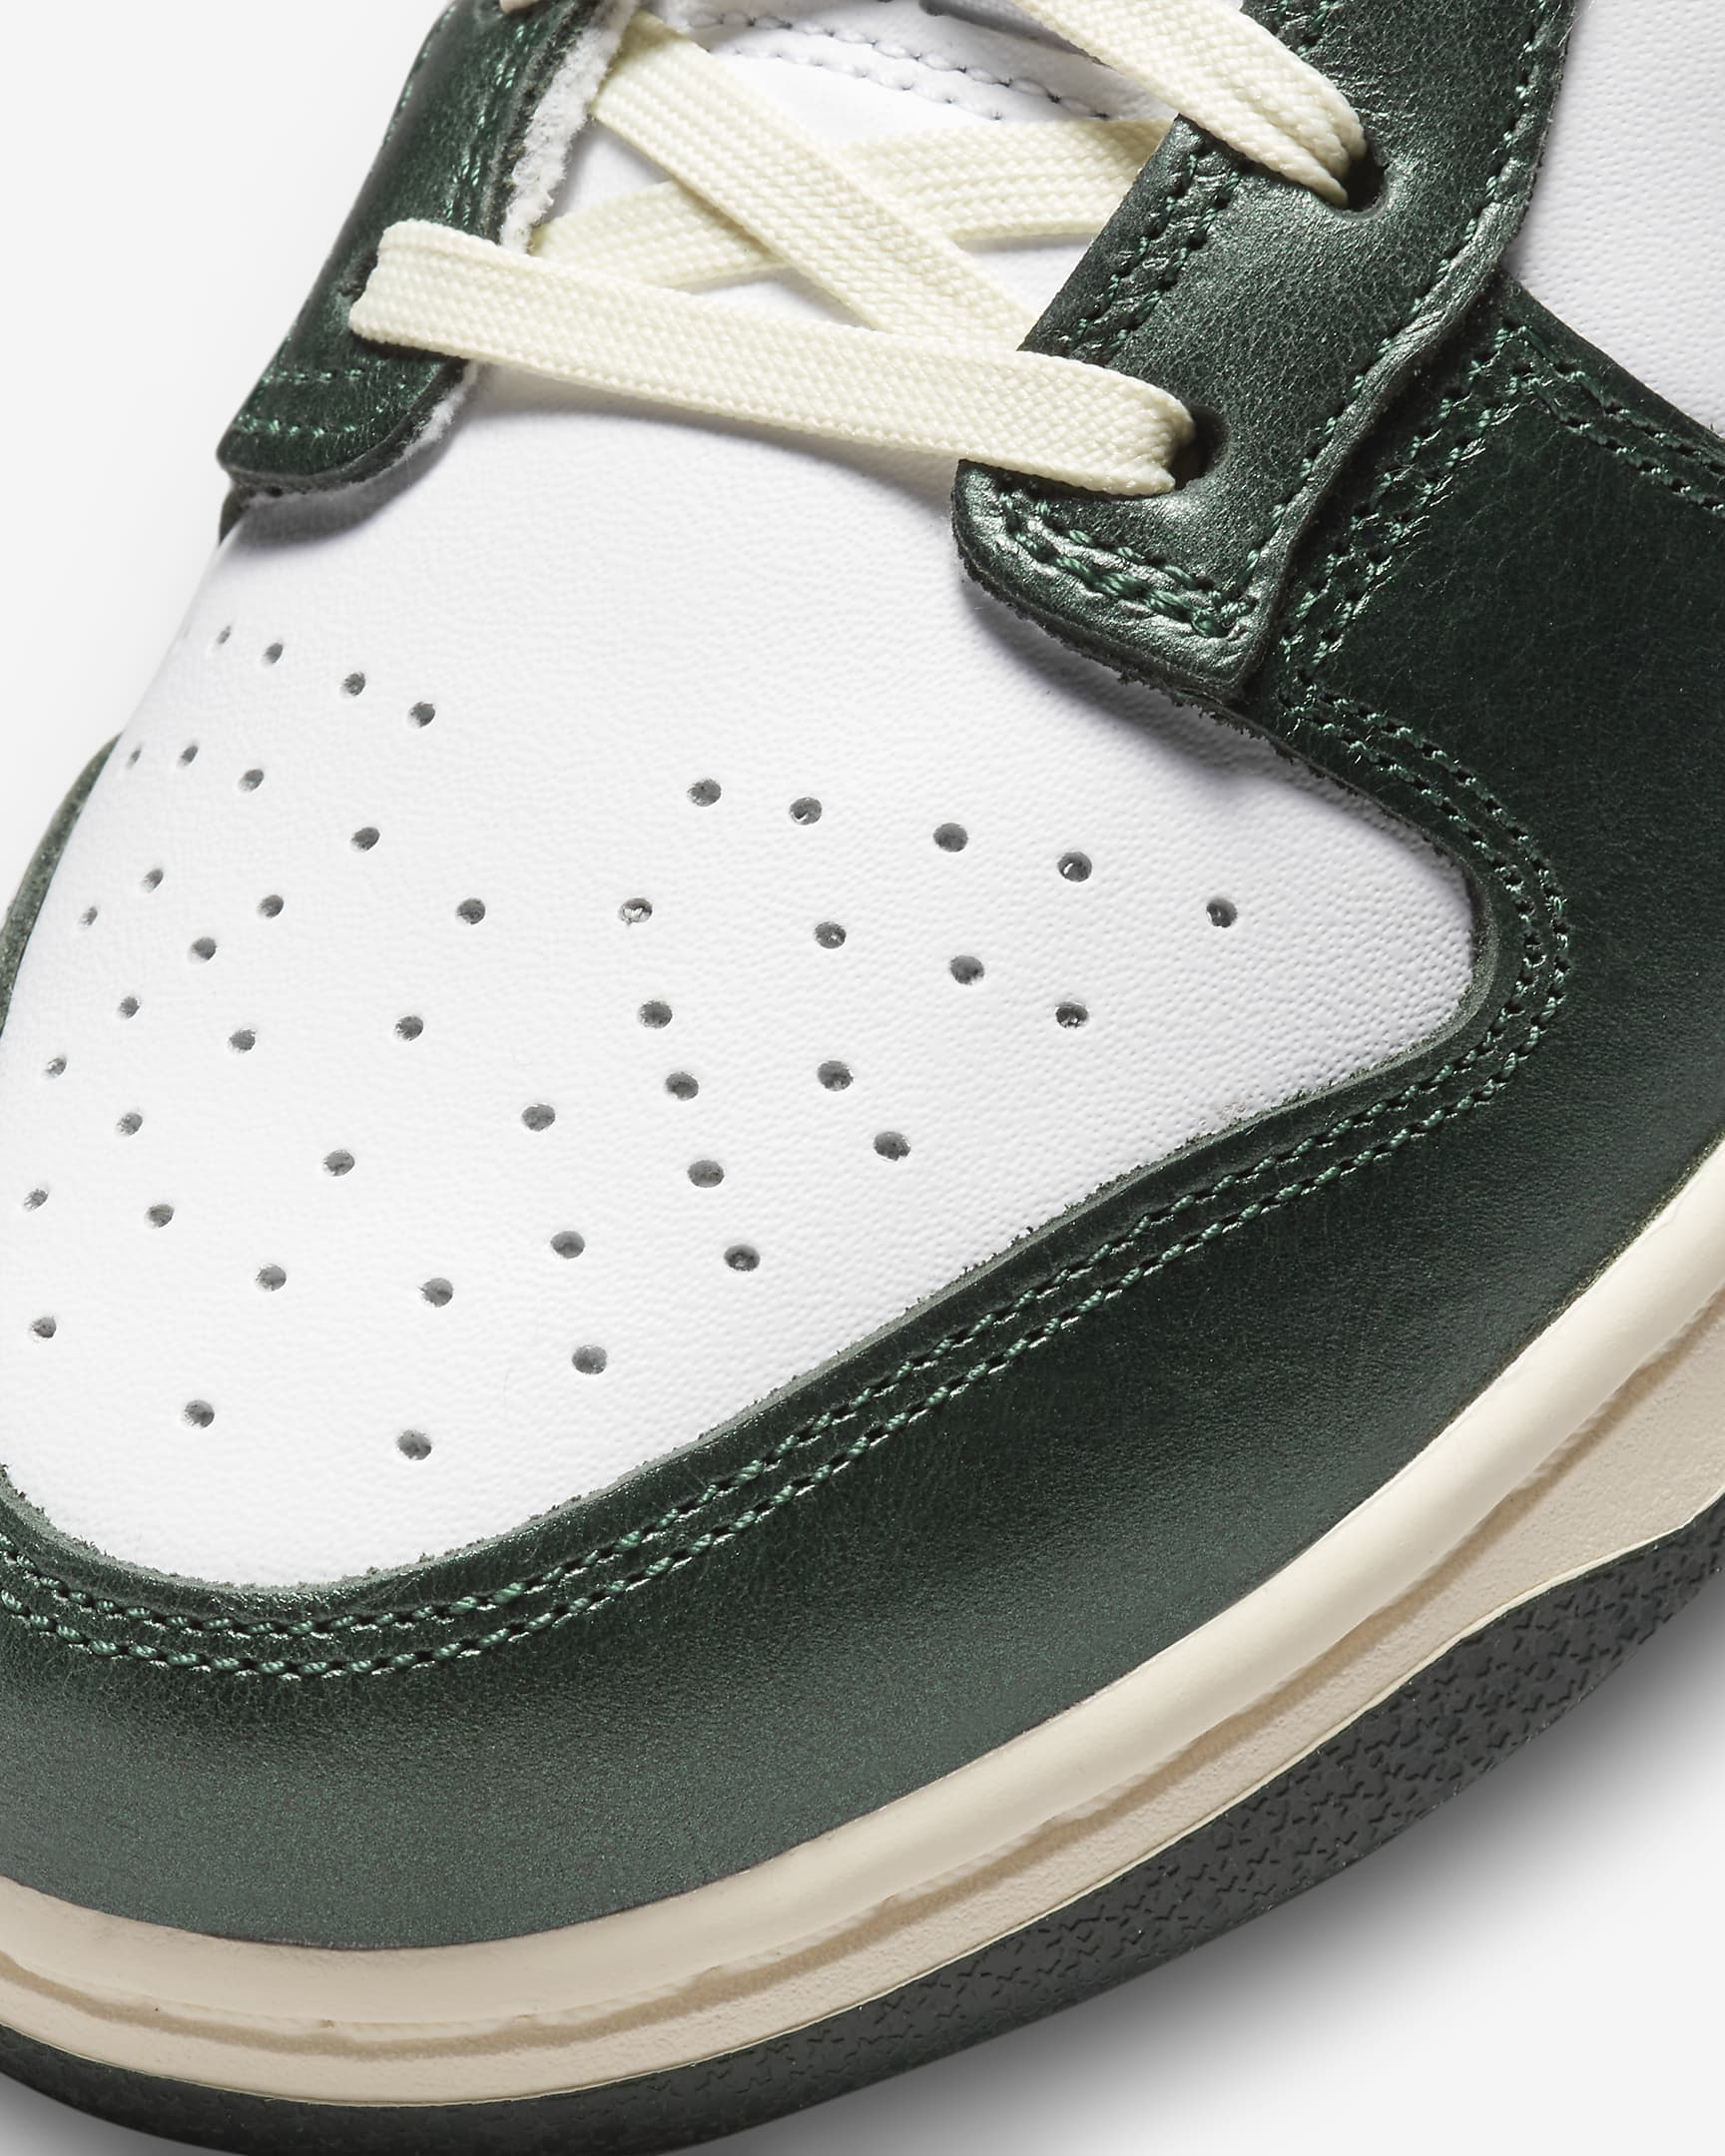 Nike Dunk Low Kadın Ayakkabısı - Beyaz/Coconut Milk/Pro Green